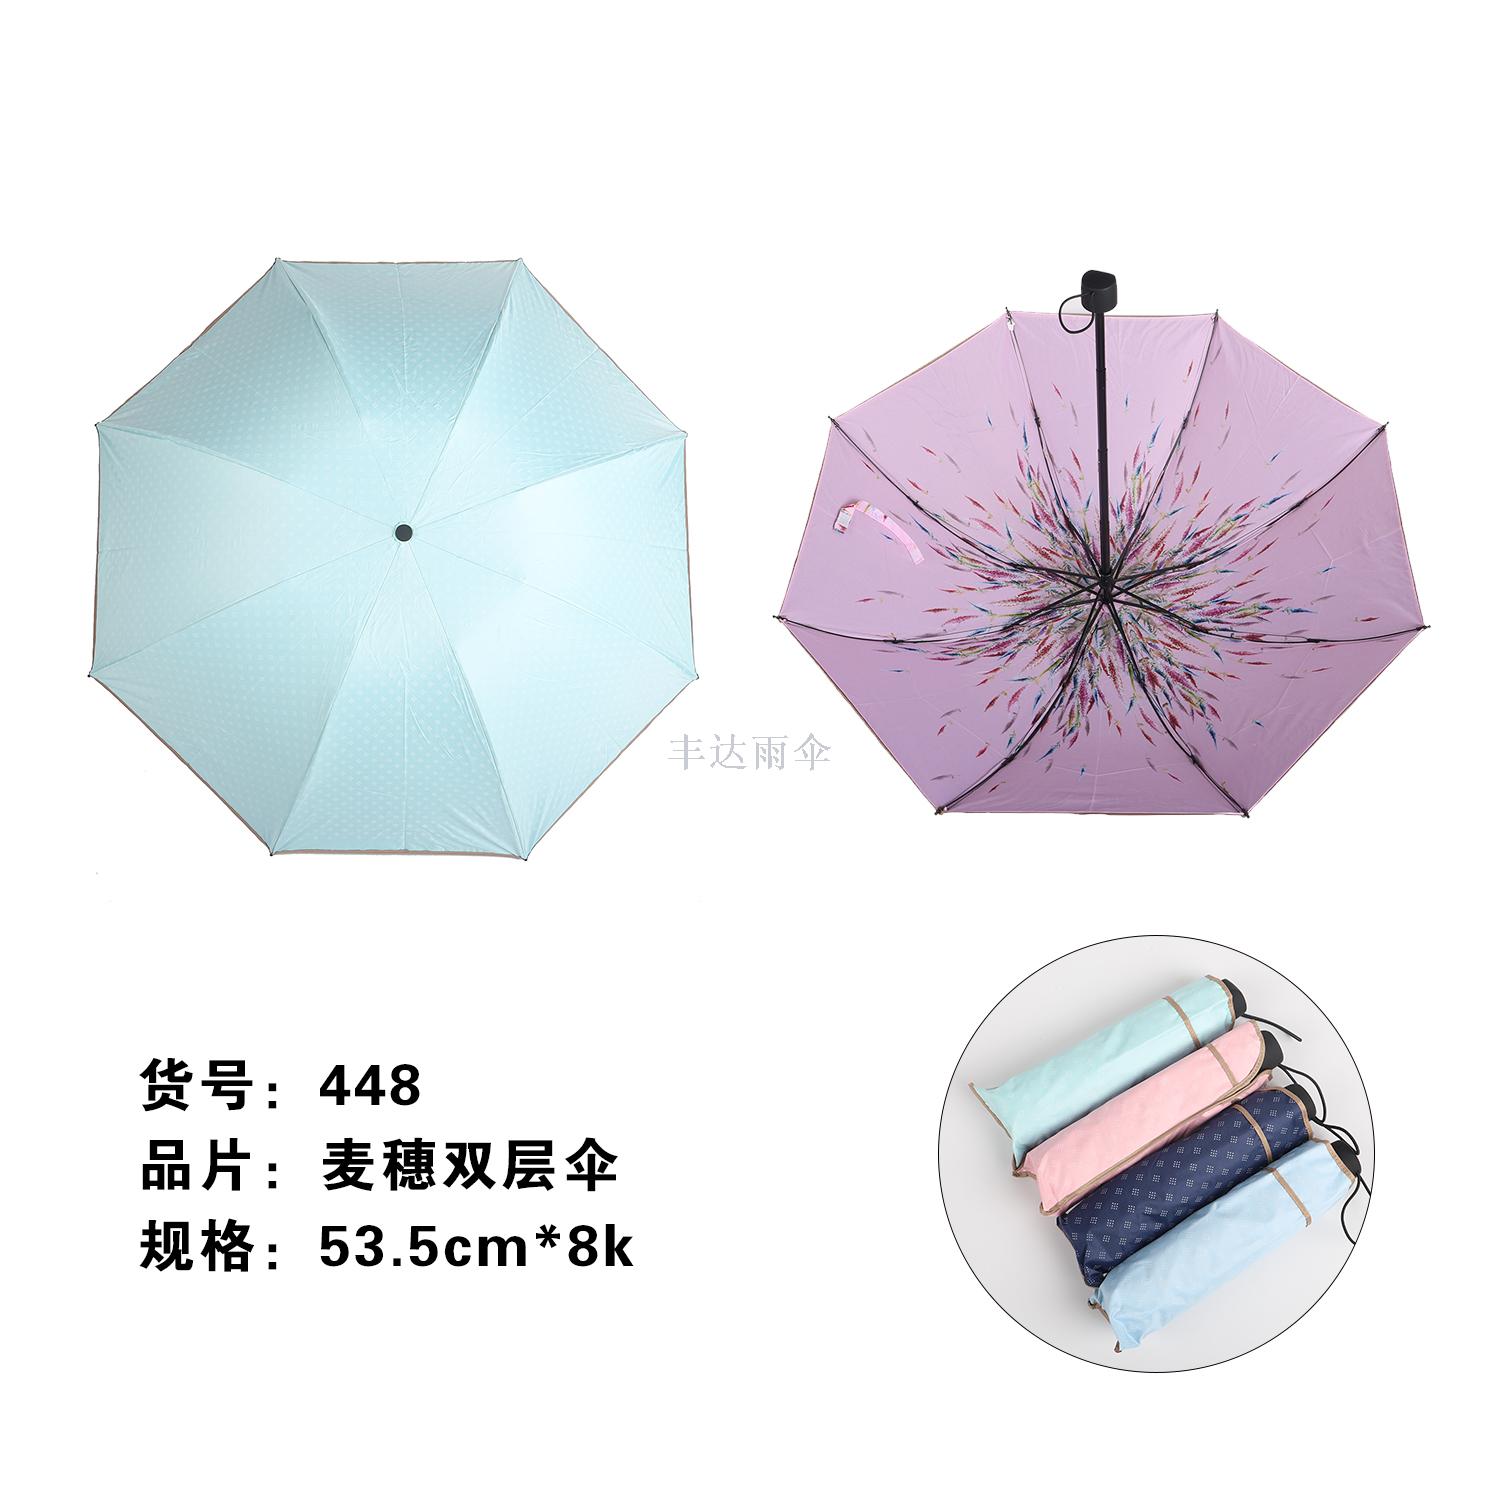 款式: 三折伞半径: 55cm(含)-61cm(含)适用对象: 成人种类: 晴雨伞